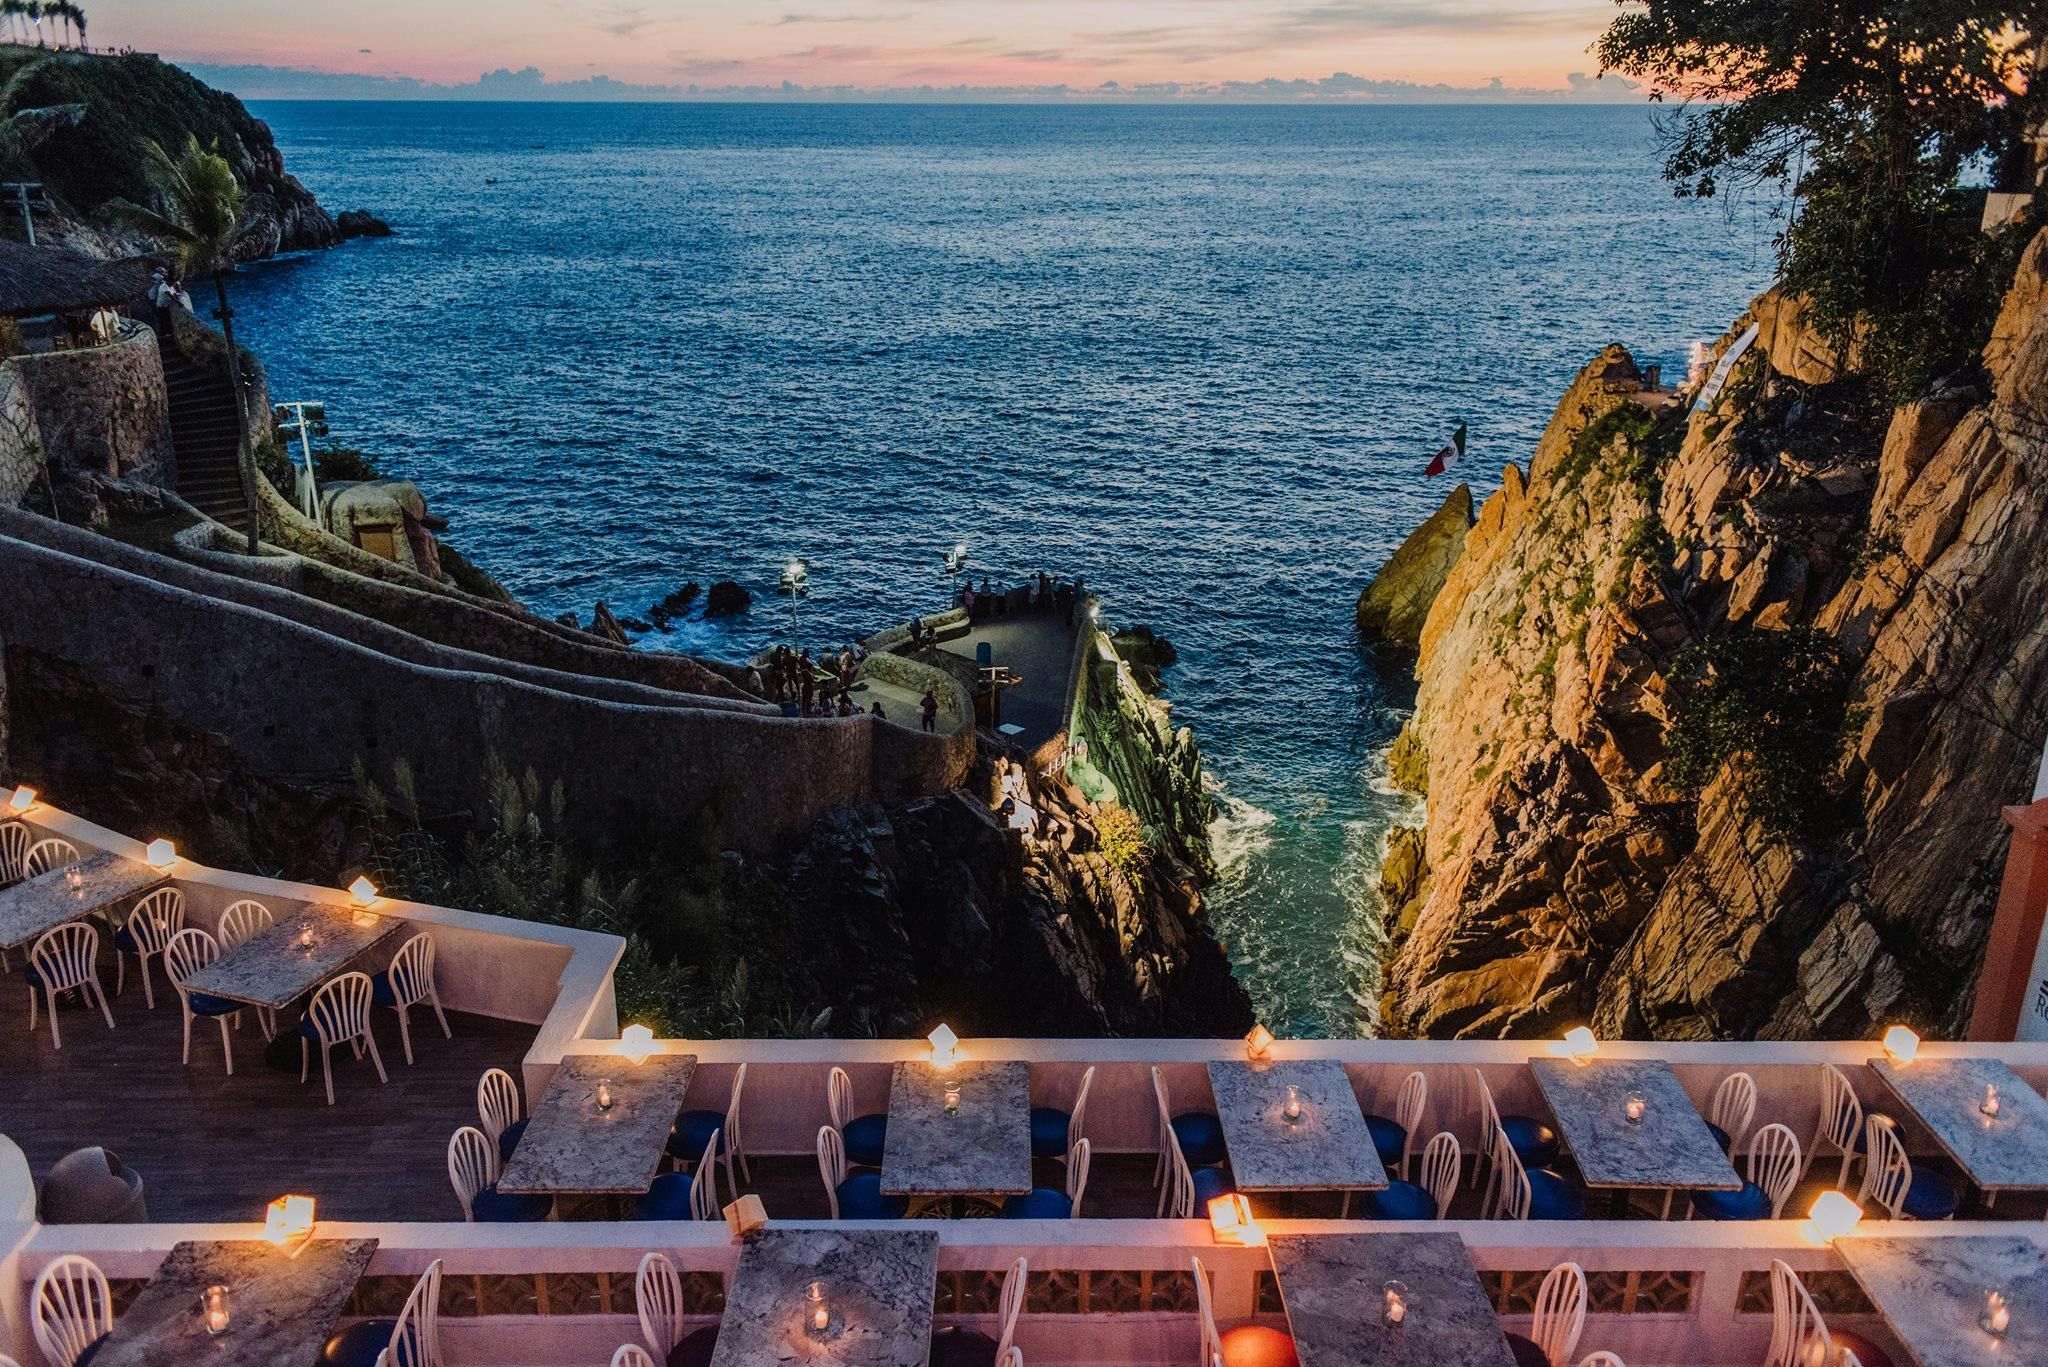 Imagen del tour: Cena en la bahía de Acapulco con espectáculo de clavados en acantilados